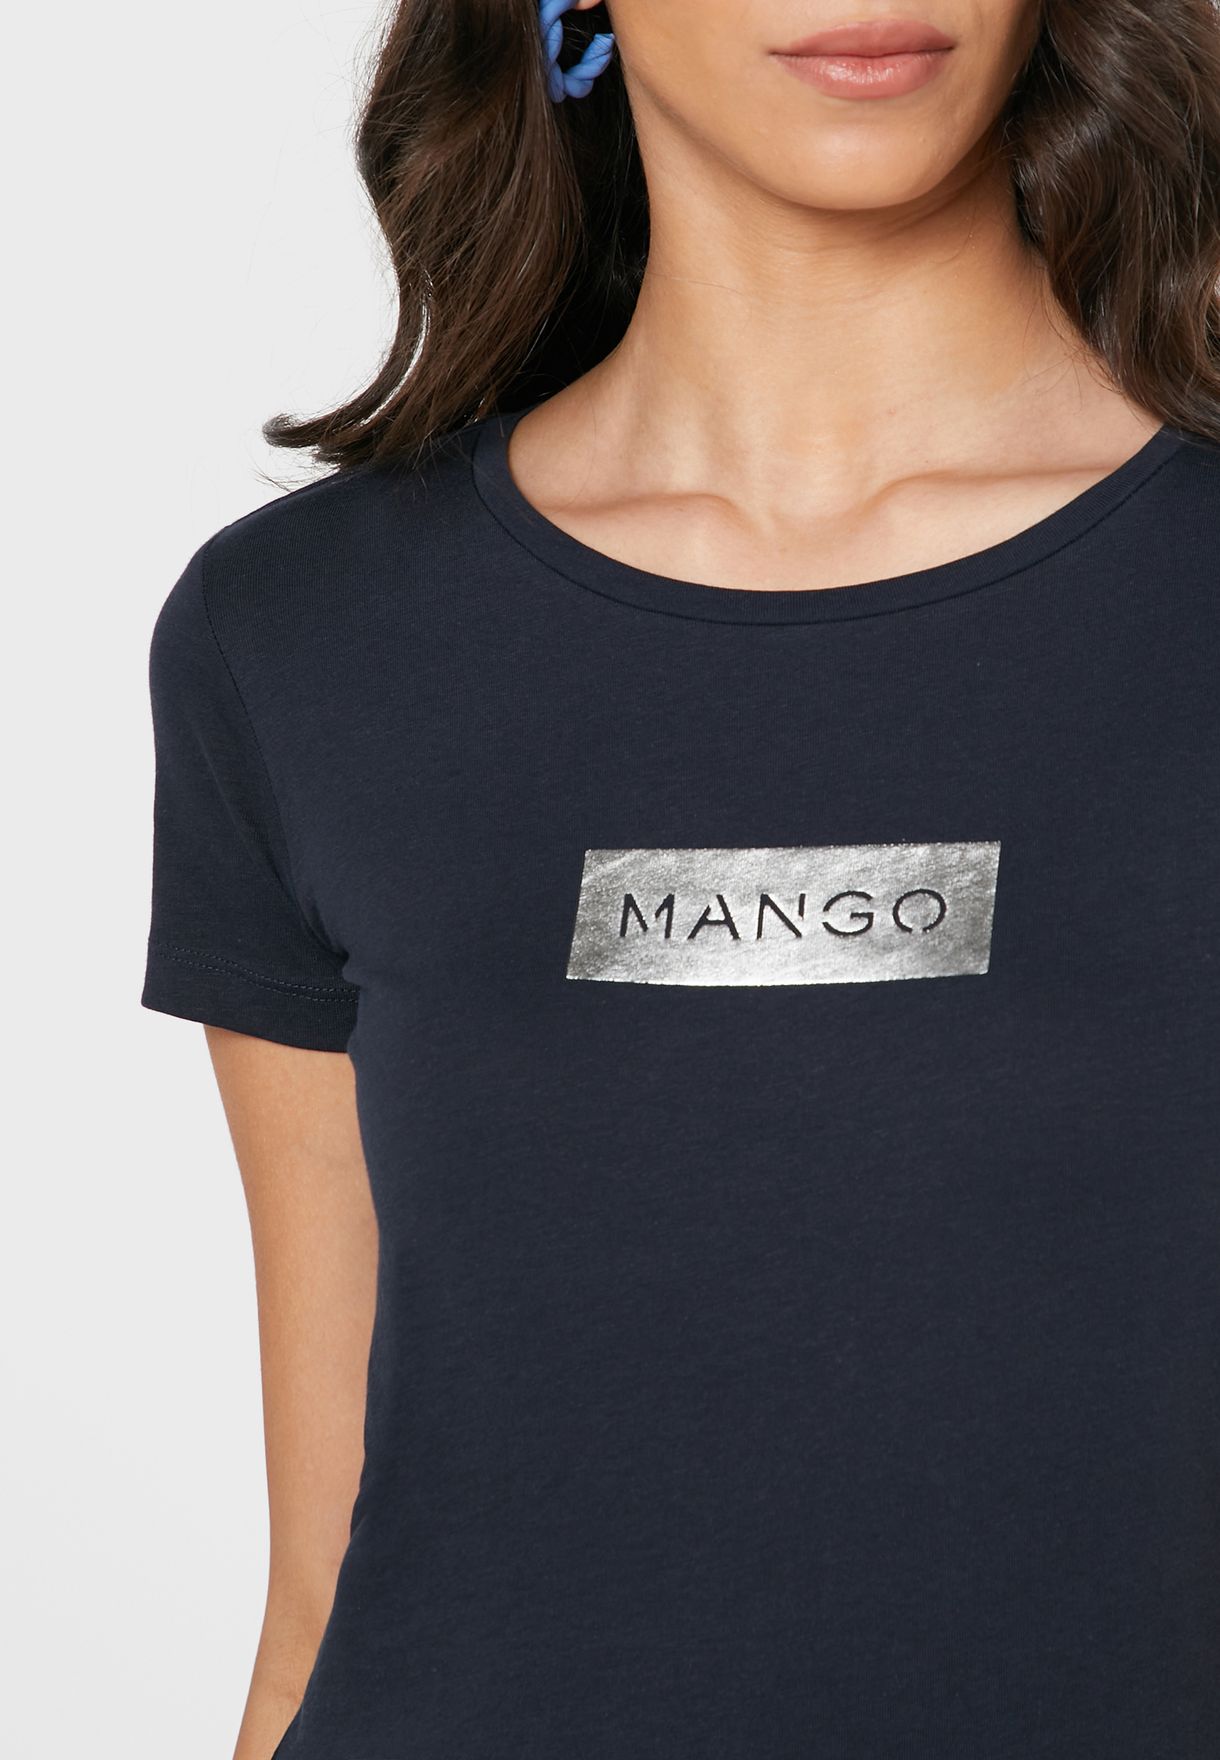 Navy Blue XS discount 70% WOMEN FASHION Shirts & T-shirts Shirt Casual Mango Shirt 